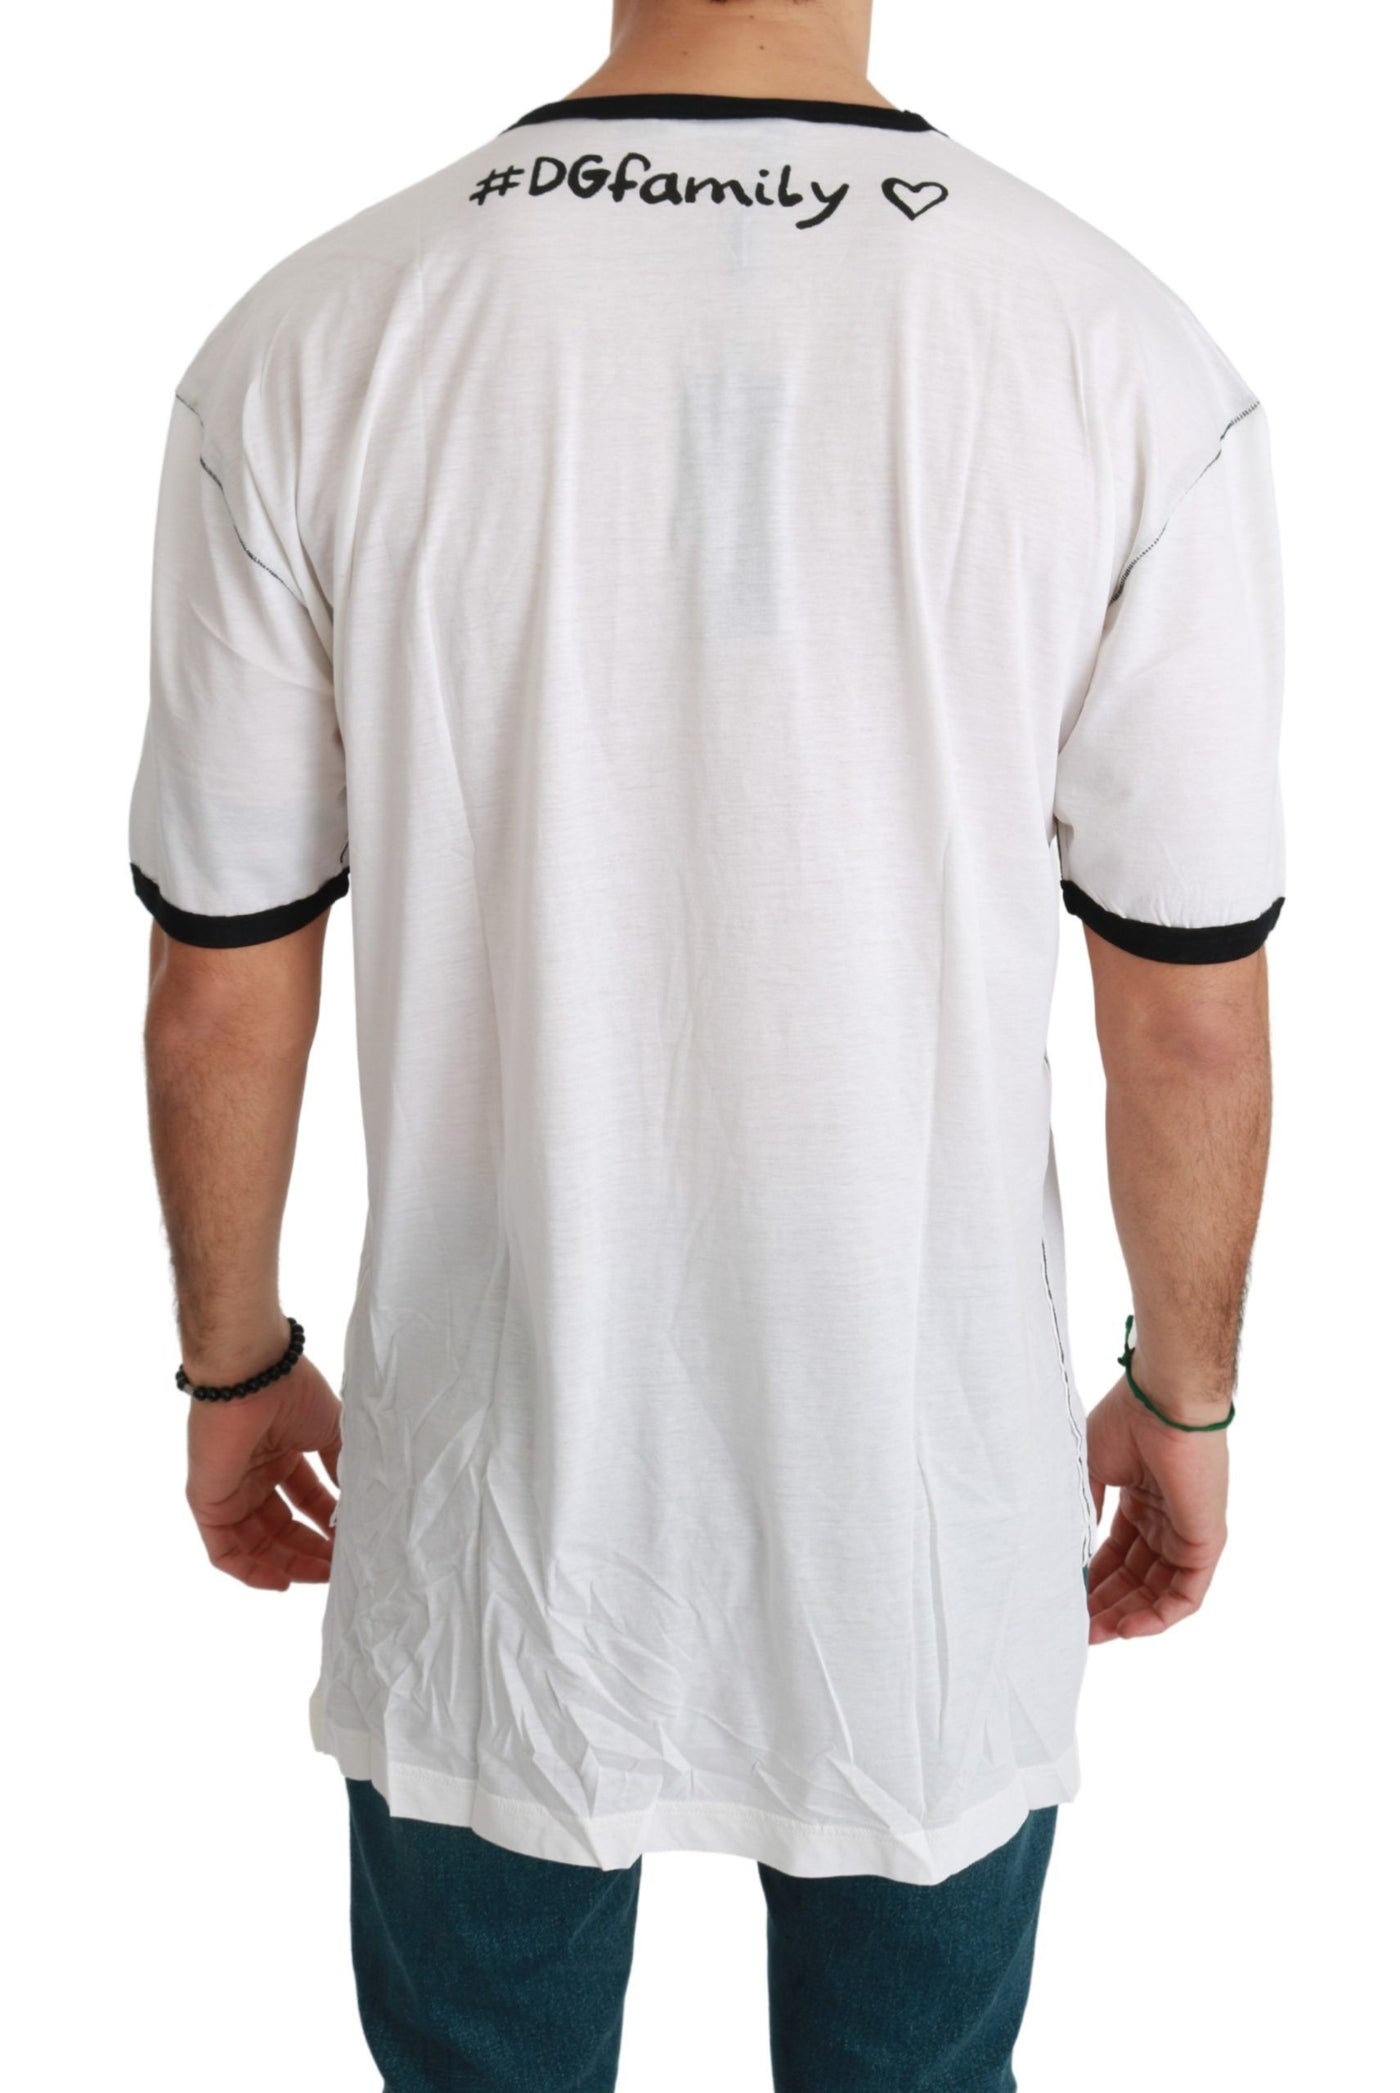 Dolce & Gabbana White Men Print #dgfamily Cotton T-shirt